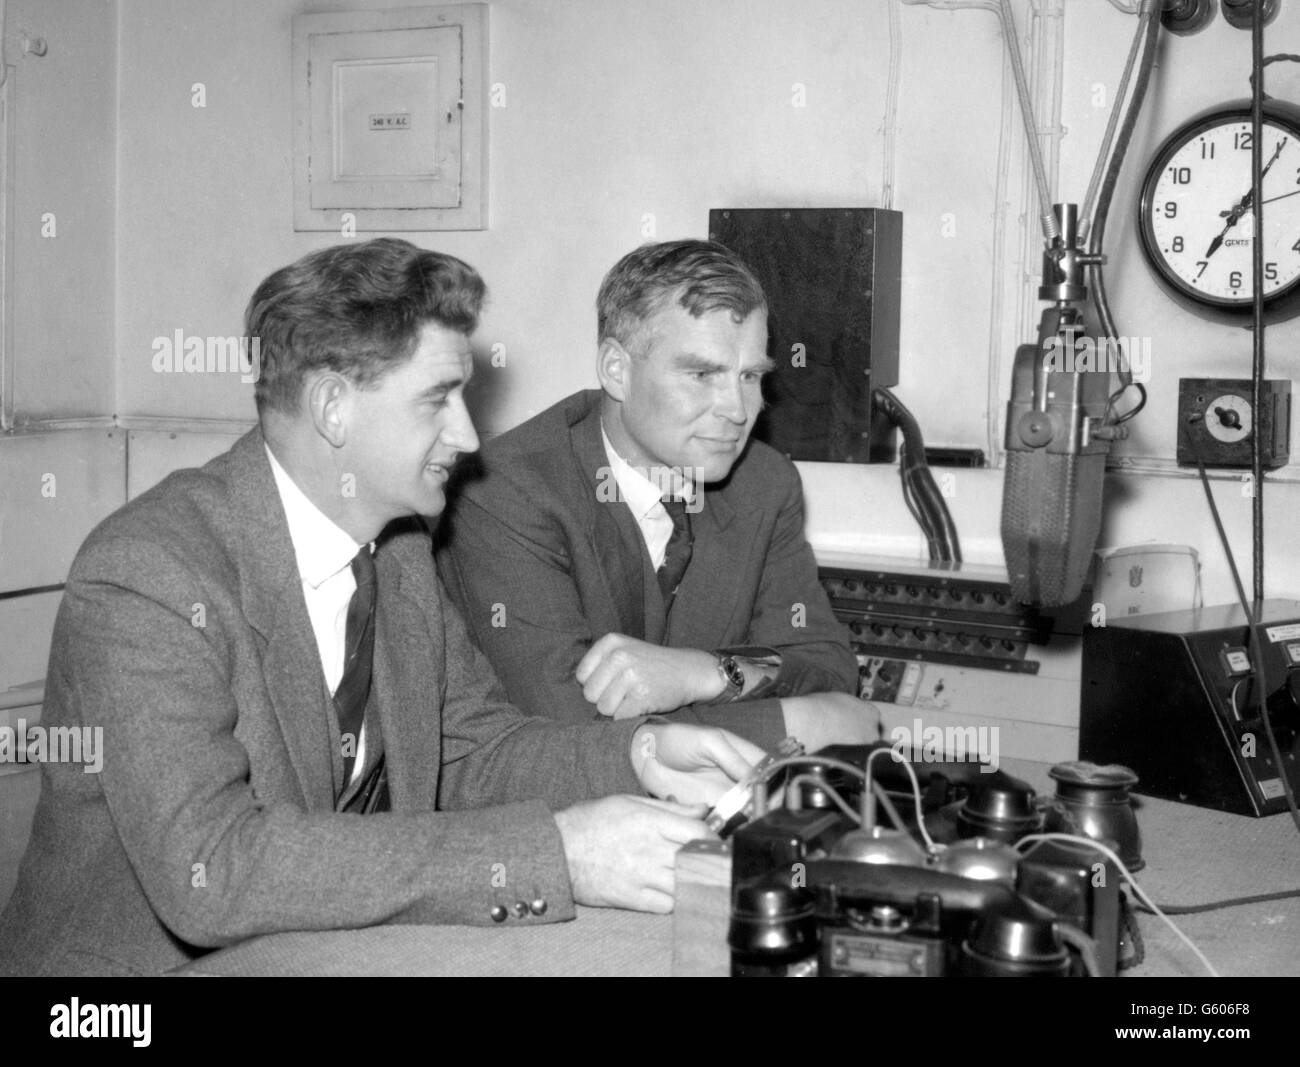 Le photographe George Lowe (à gauche) et le Dr Vivian Fuchs, chef de l'expédition transantarctique du Commonwealth, à la maison de radiodiffusion de Londres. Un enregistrement a été fait pour être diffusé aux huit membres de la partie Advance à la base de Shackleton, et établir un contact direct avec eux par radio-téléphone. Banque D'Images